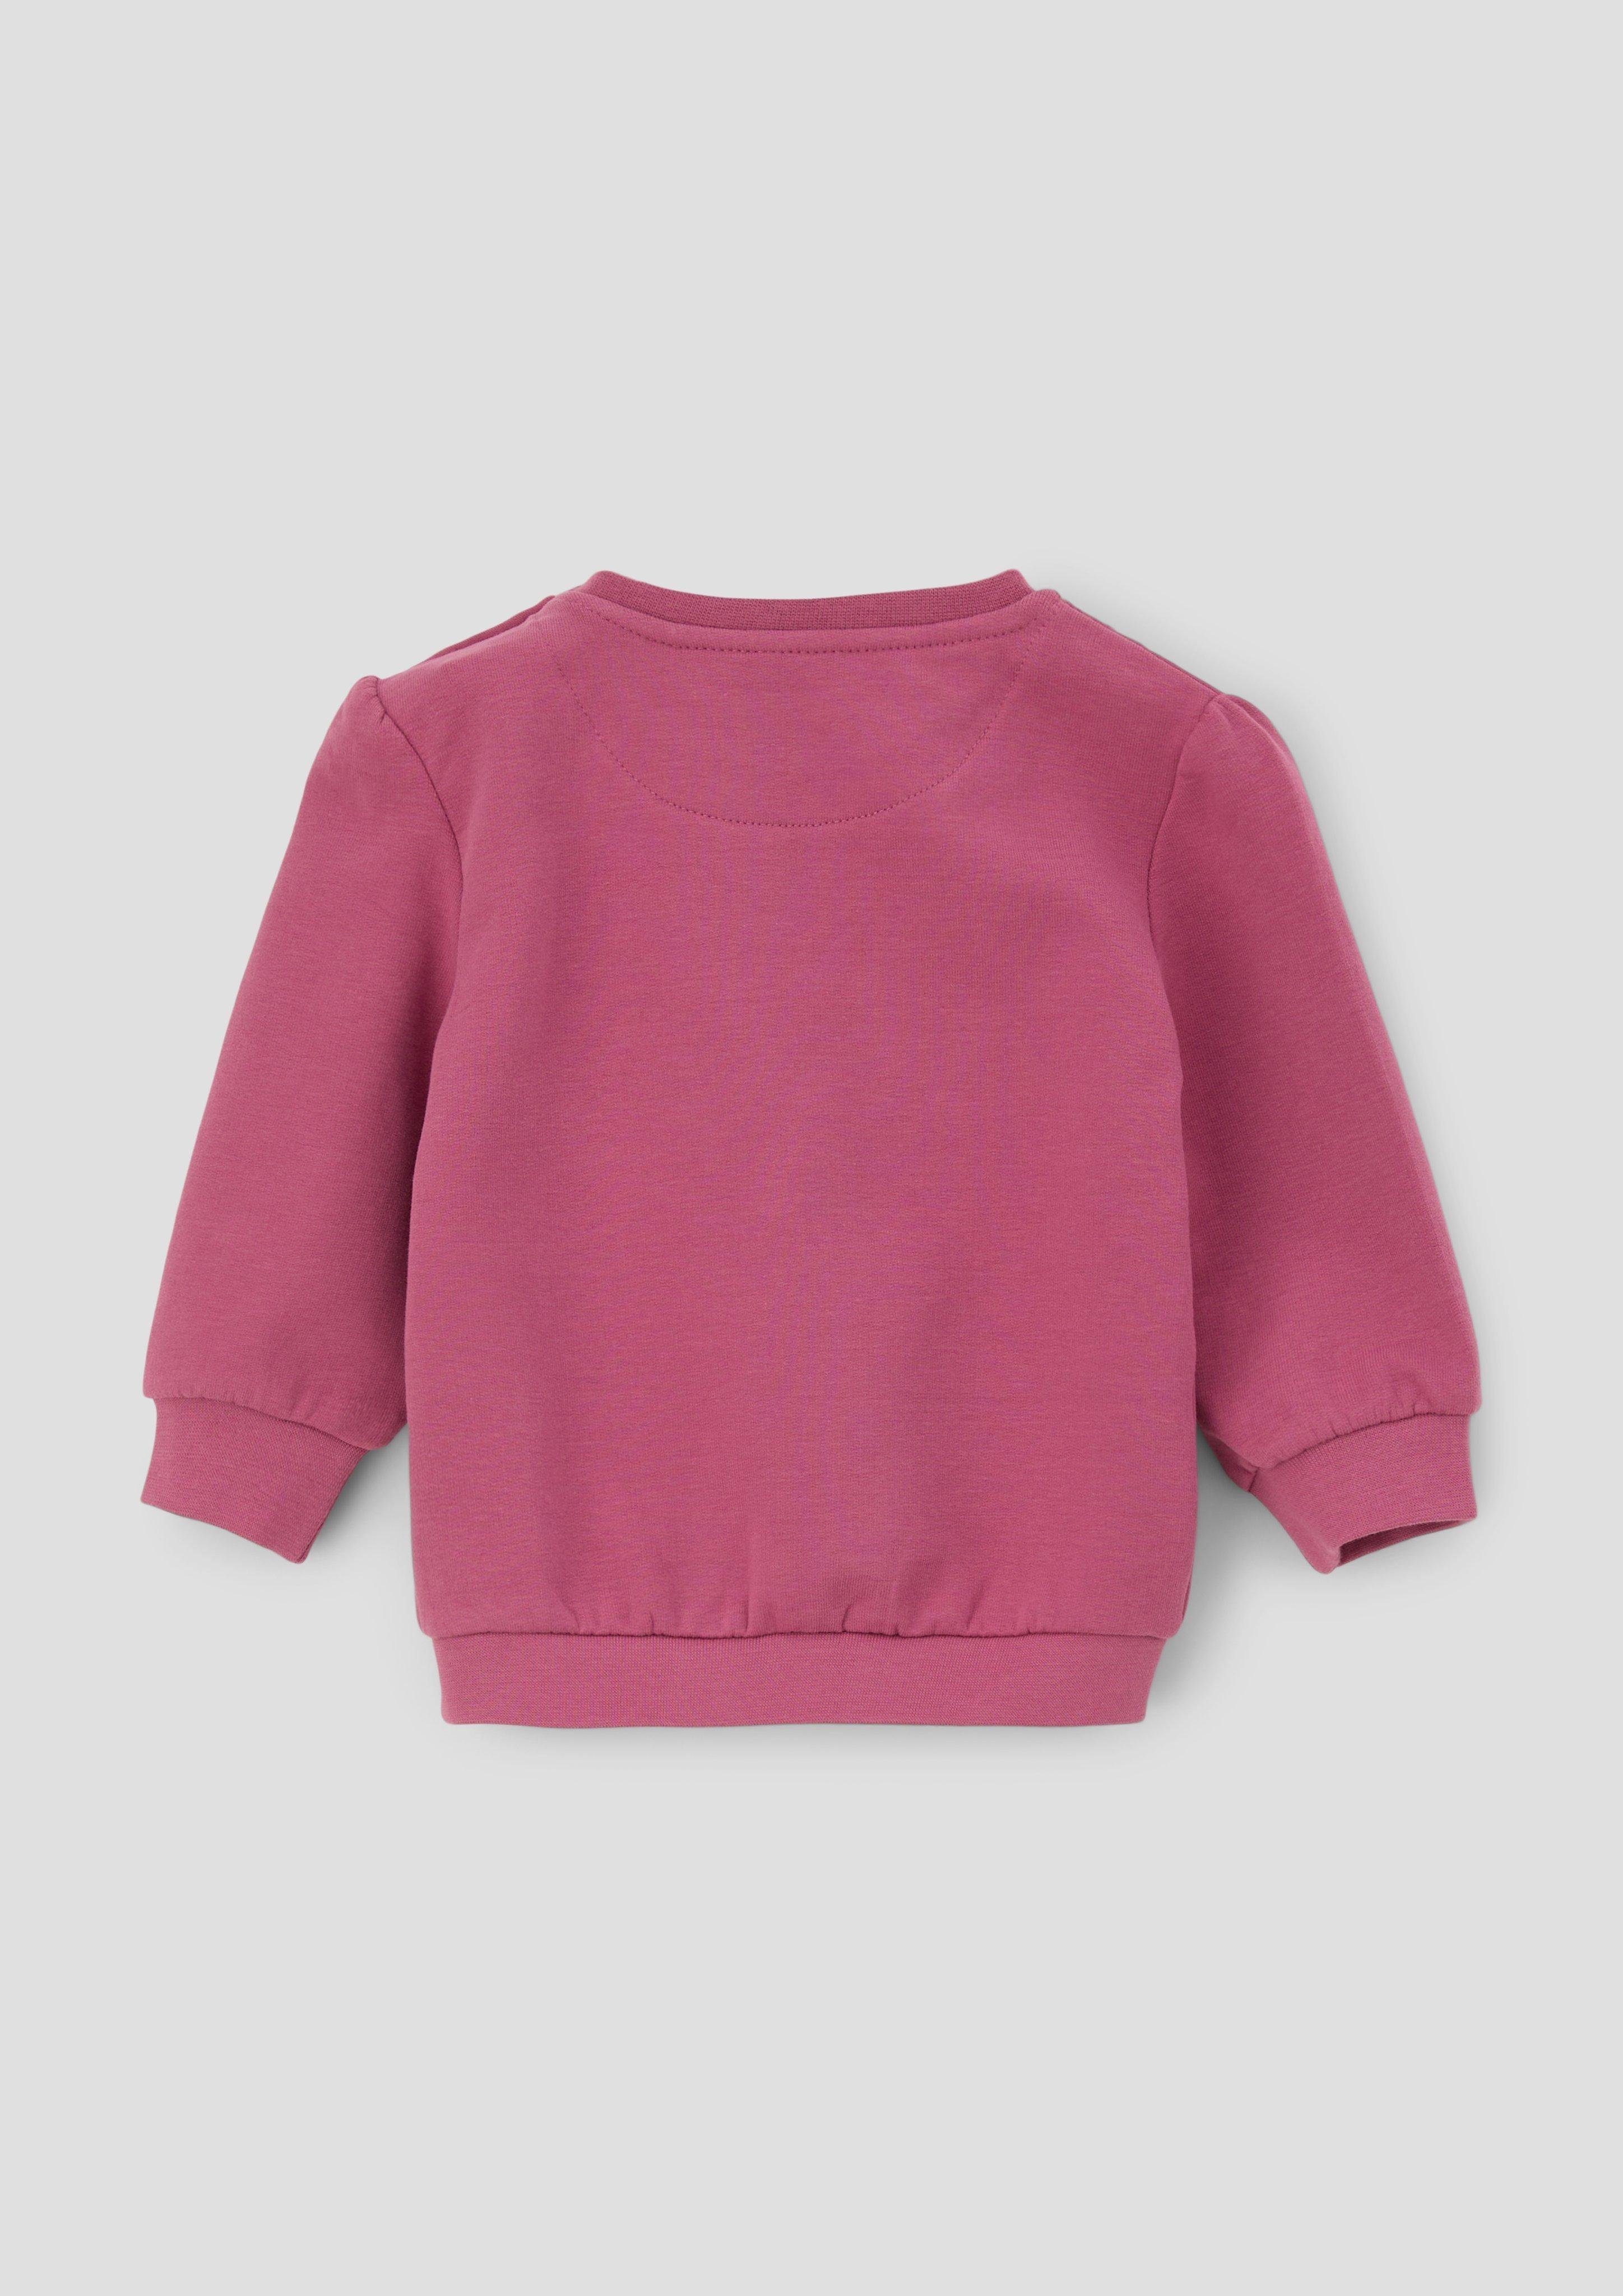 Sweatshirt Frontprint Raffung s.Oliver mit Sweater pink Fransen, Pailletten,